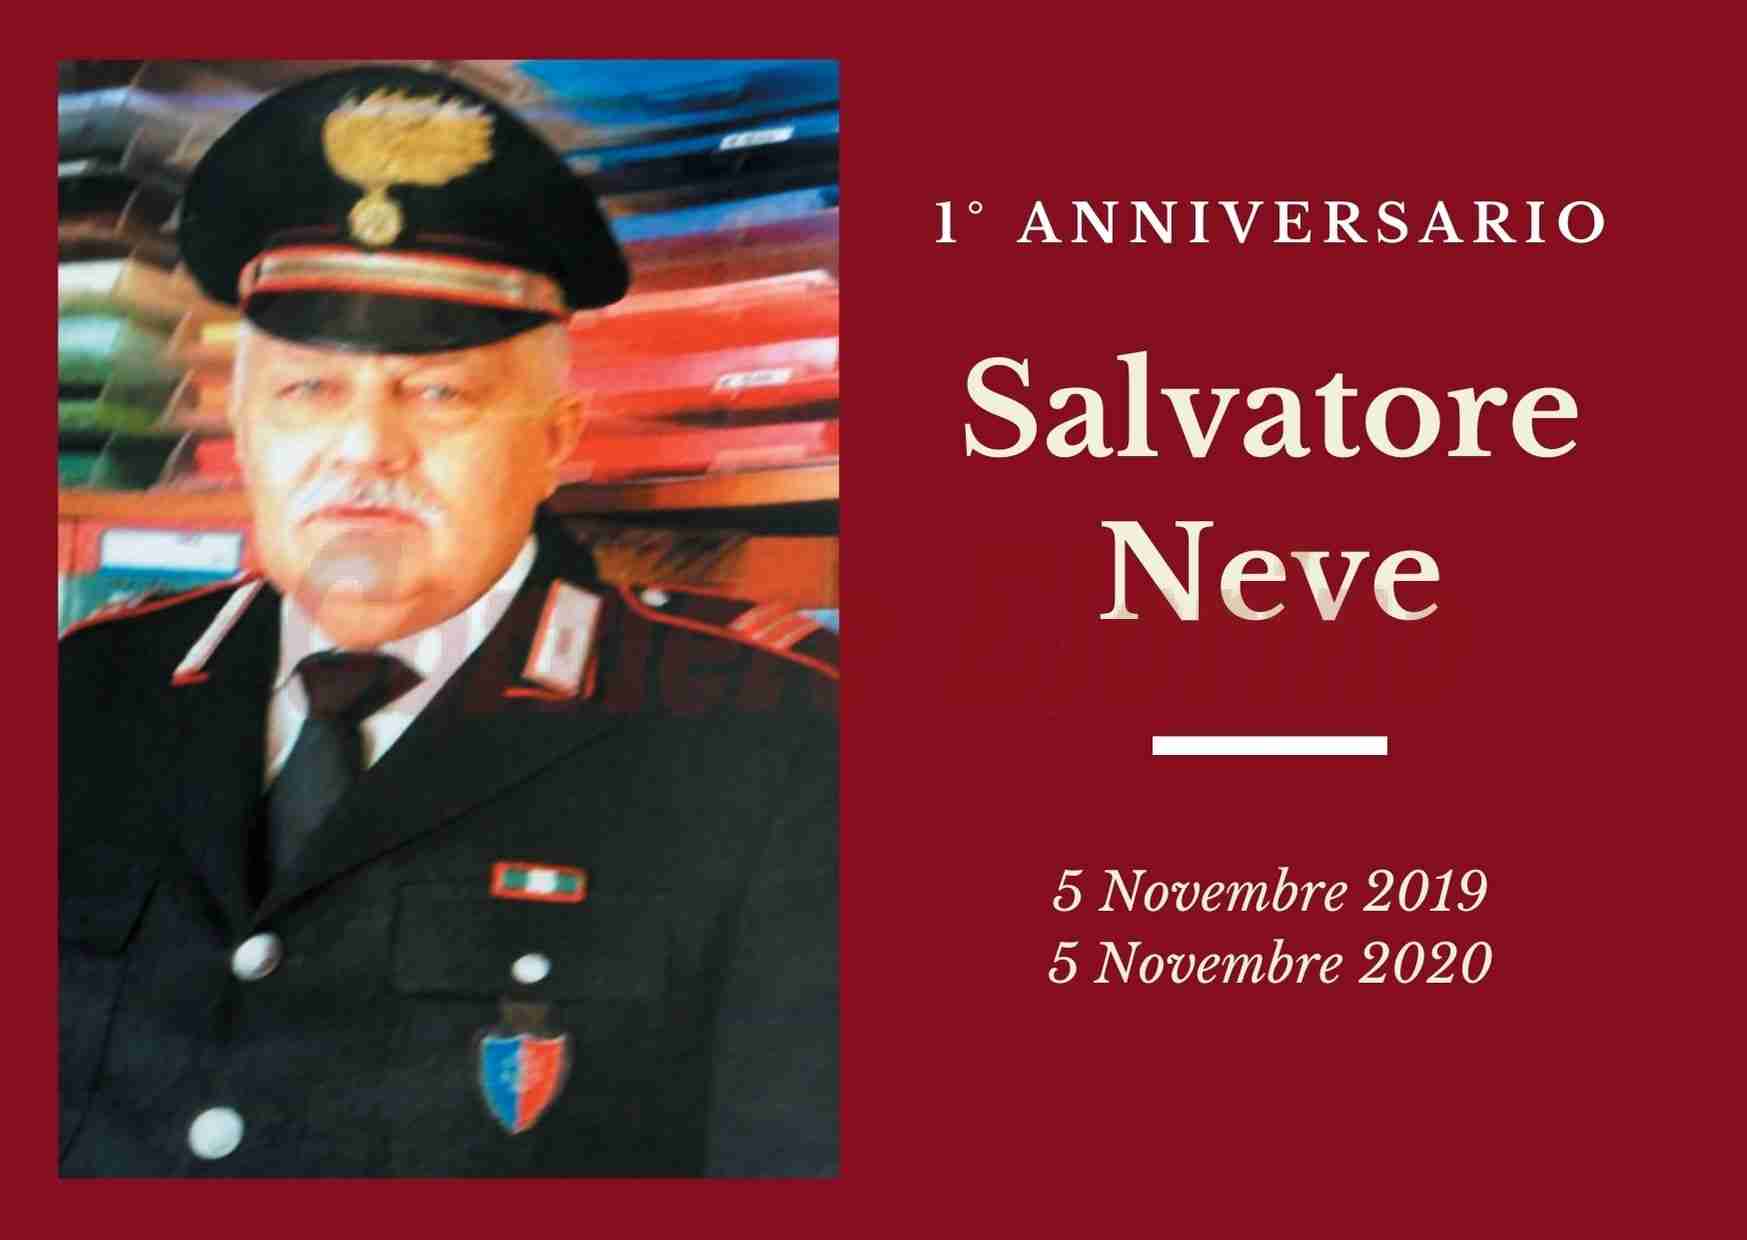 Necrologio: oggi il primo anniversario dalla morte di Salvatore Neve, Maresciallo dei Carabinieri in pensione